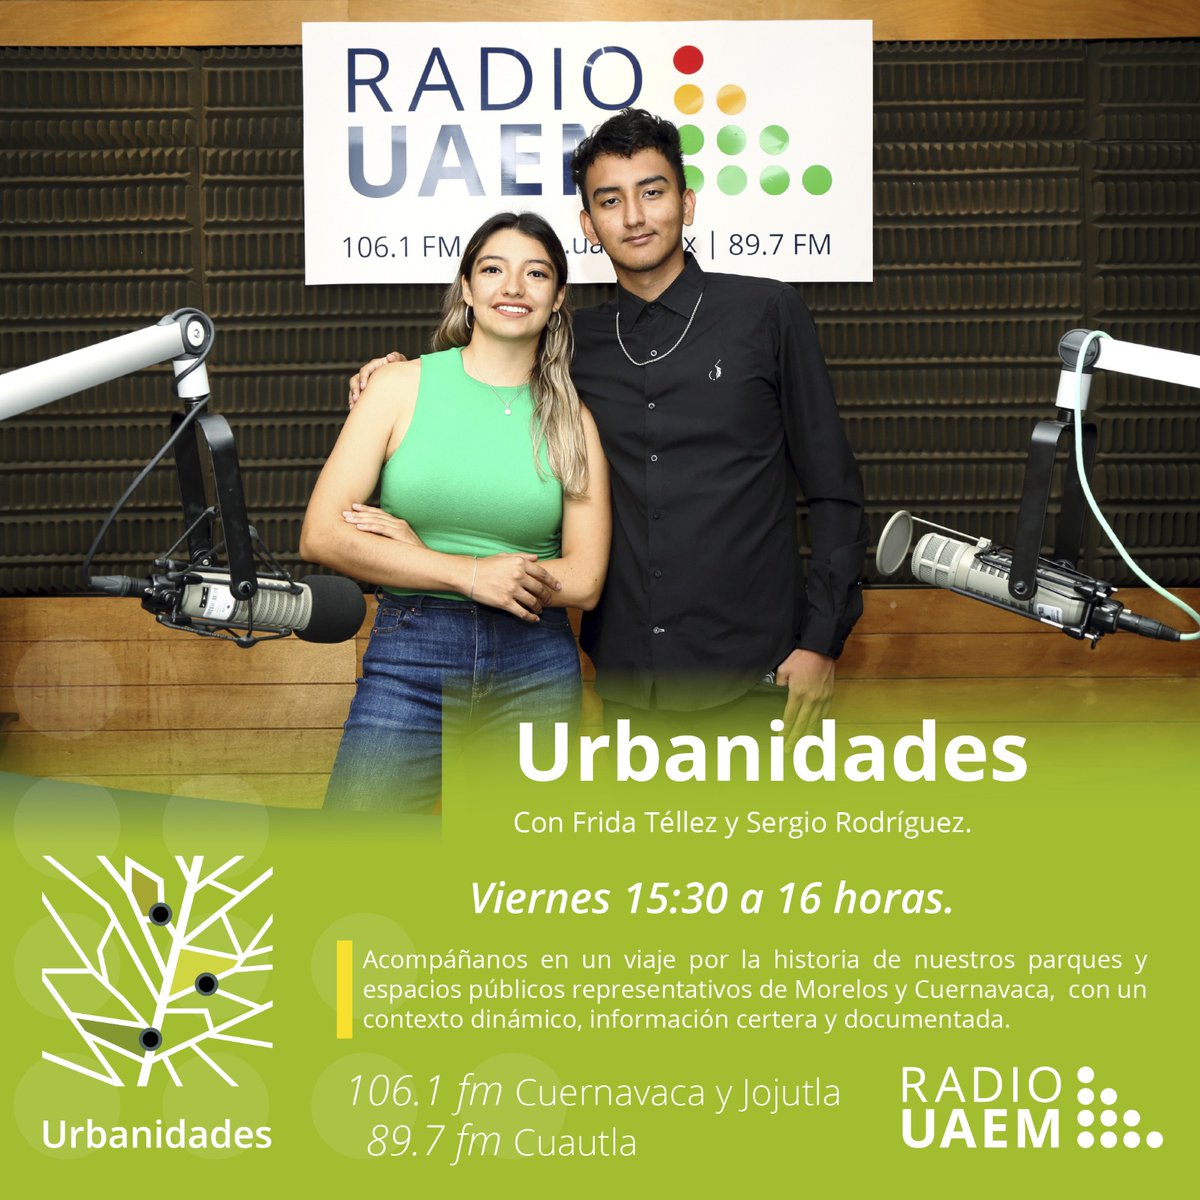 No te pierdas el estreno del programa 'Urbanidades' en @radiouaem hoy a partir de las 15:30 horas en las frecuencias 106.1 en Cuernavaca y Jojutla, y 89.7 en Cuautla | Visita la página radio.uaem.mx | #SomosRadioPúblicaUniversitaria 📻